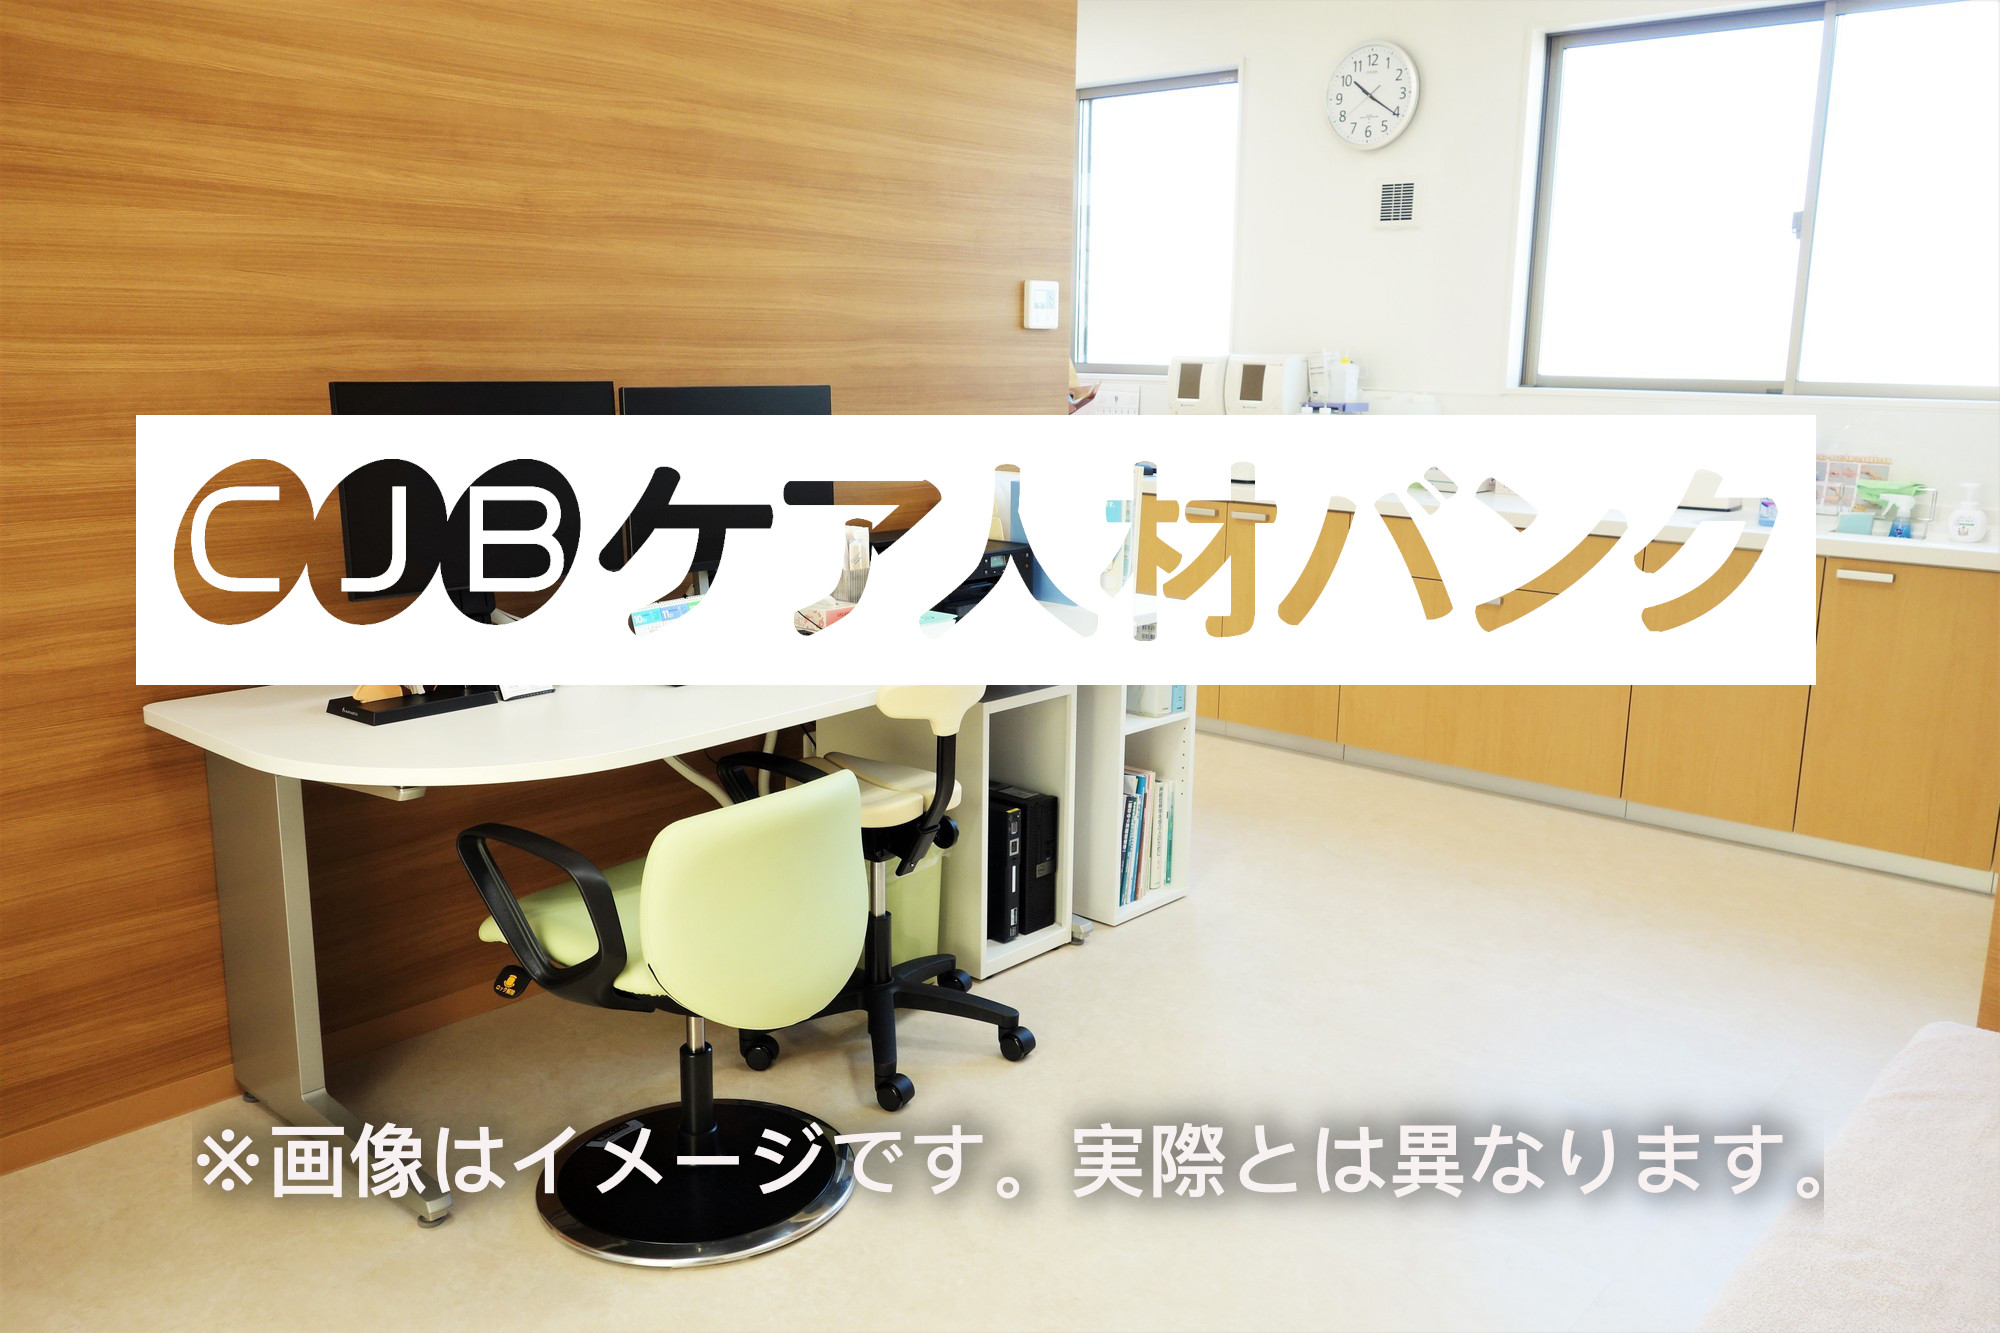 新潟県村上市・介護医療院 介護支援専門員（ケアマネージャー）の非公開求人情報(C41683)のイメージ画像